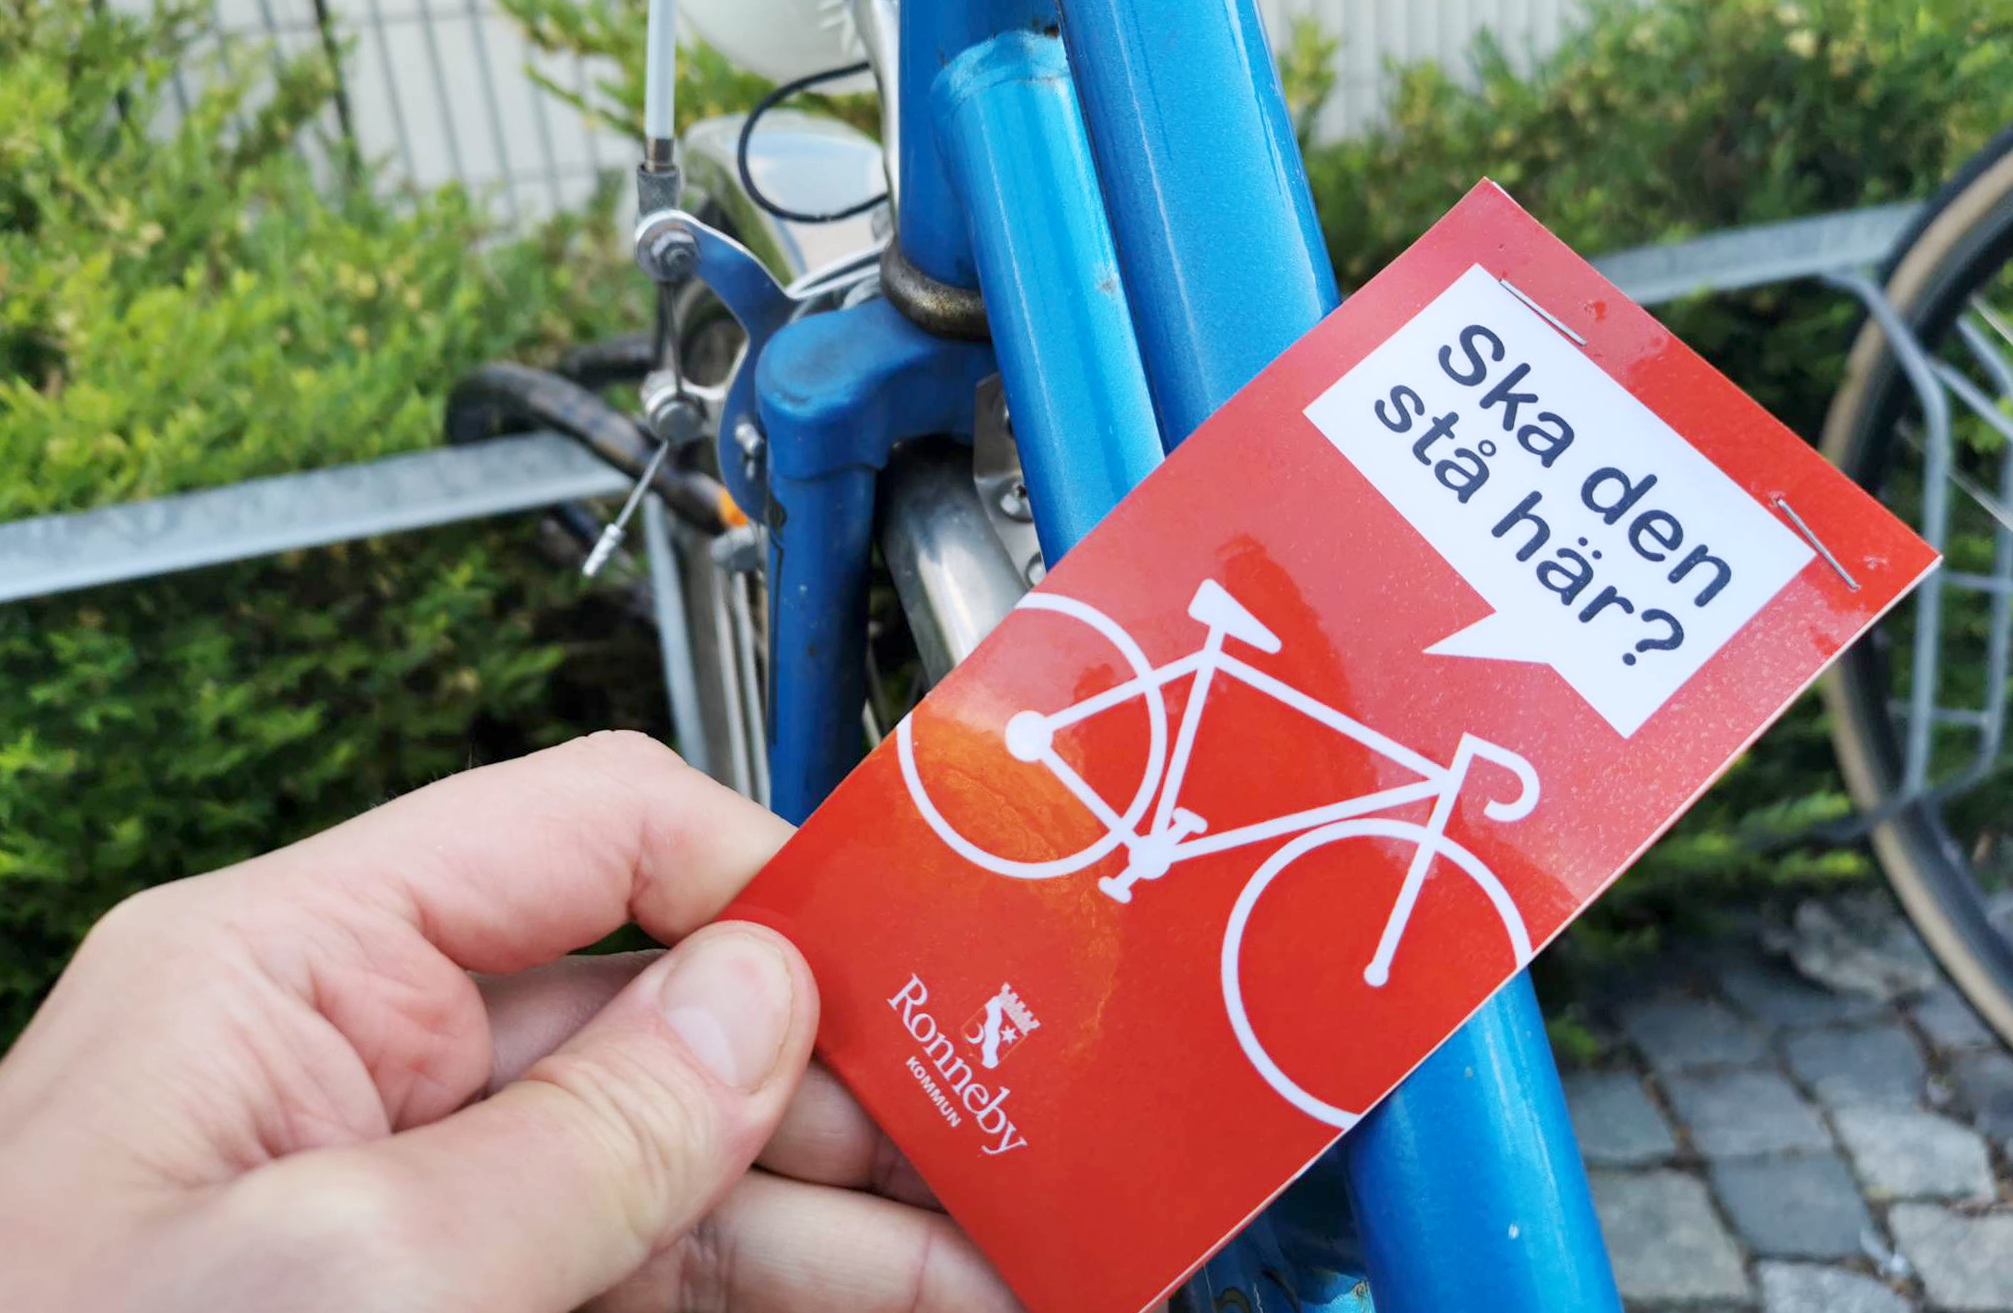 Felparkerad cykel uppmärkt med röd lapp, med budskap/fråga "Ska den stå här?", avsändare Ronneby kommun.